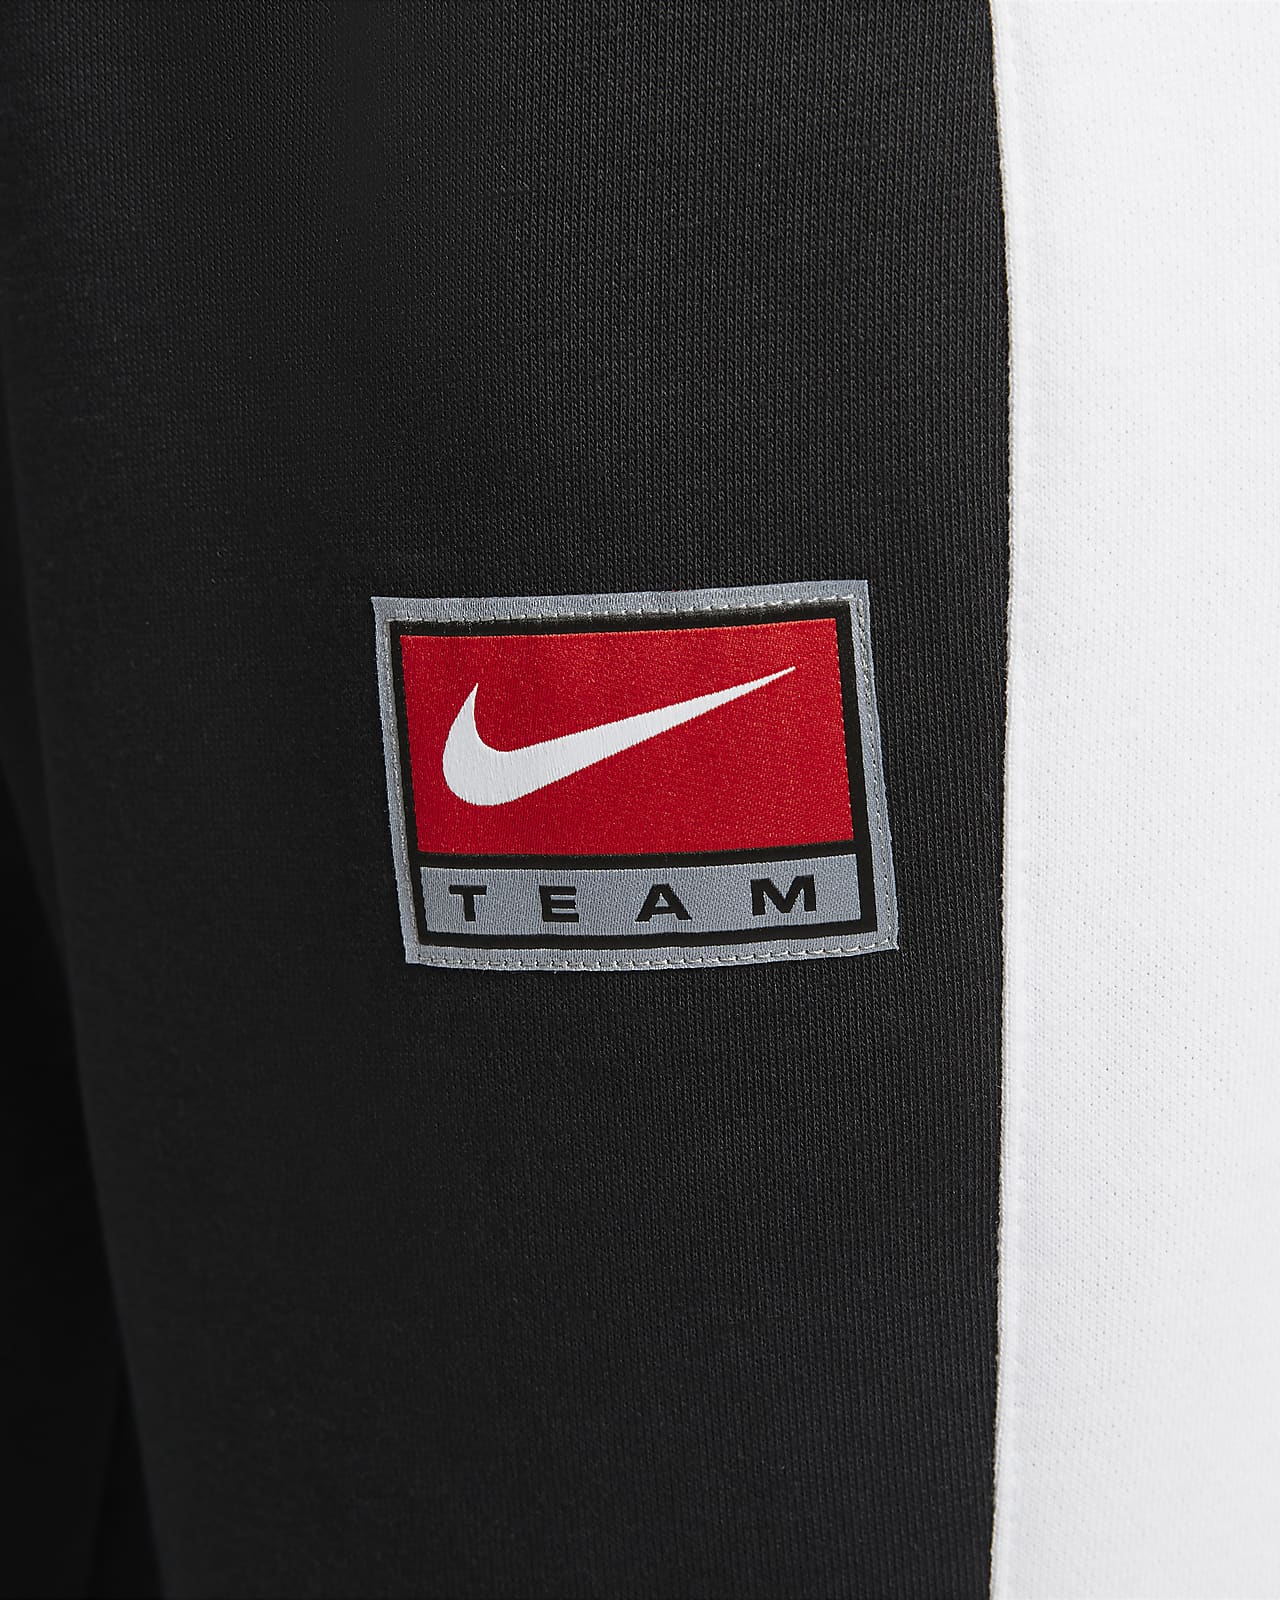 Pants de tejido Fleece para mujer Nike Sportswear Team Nike